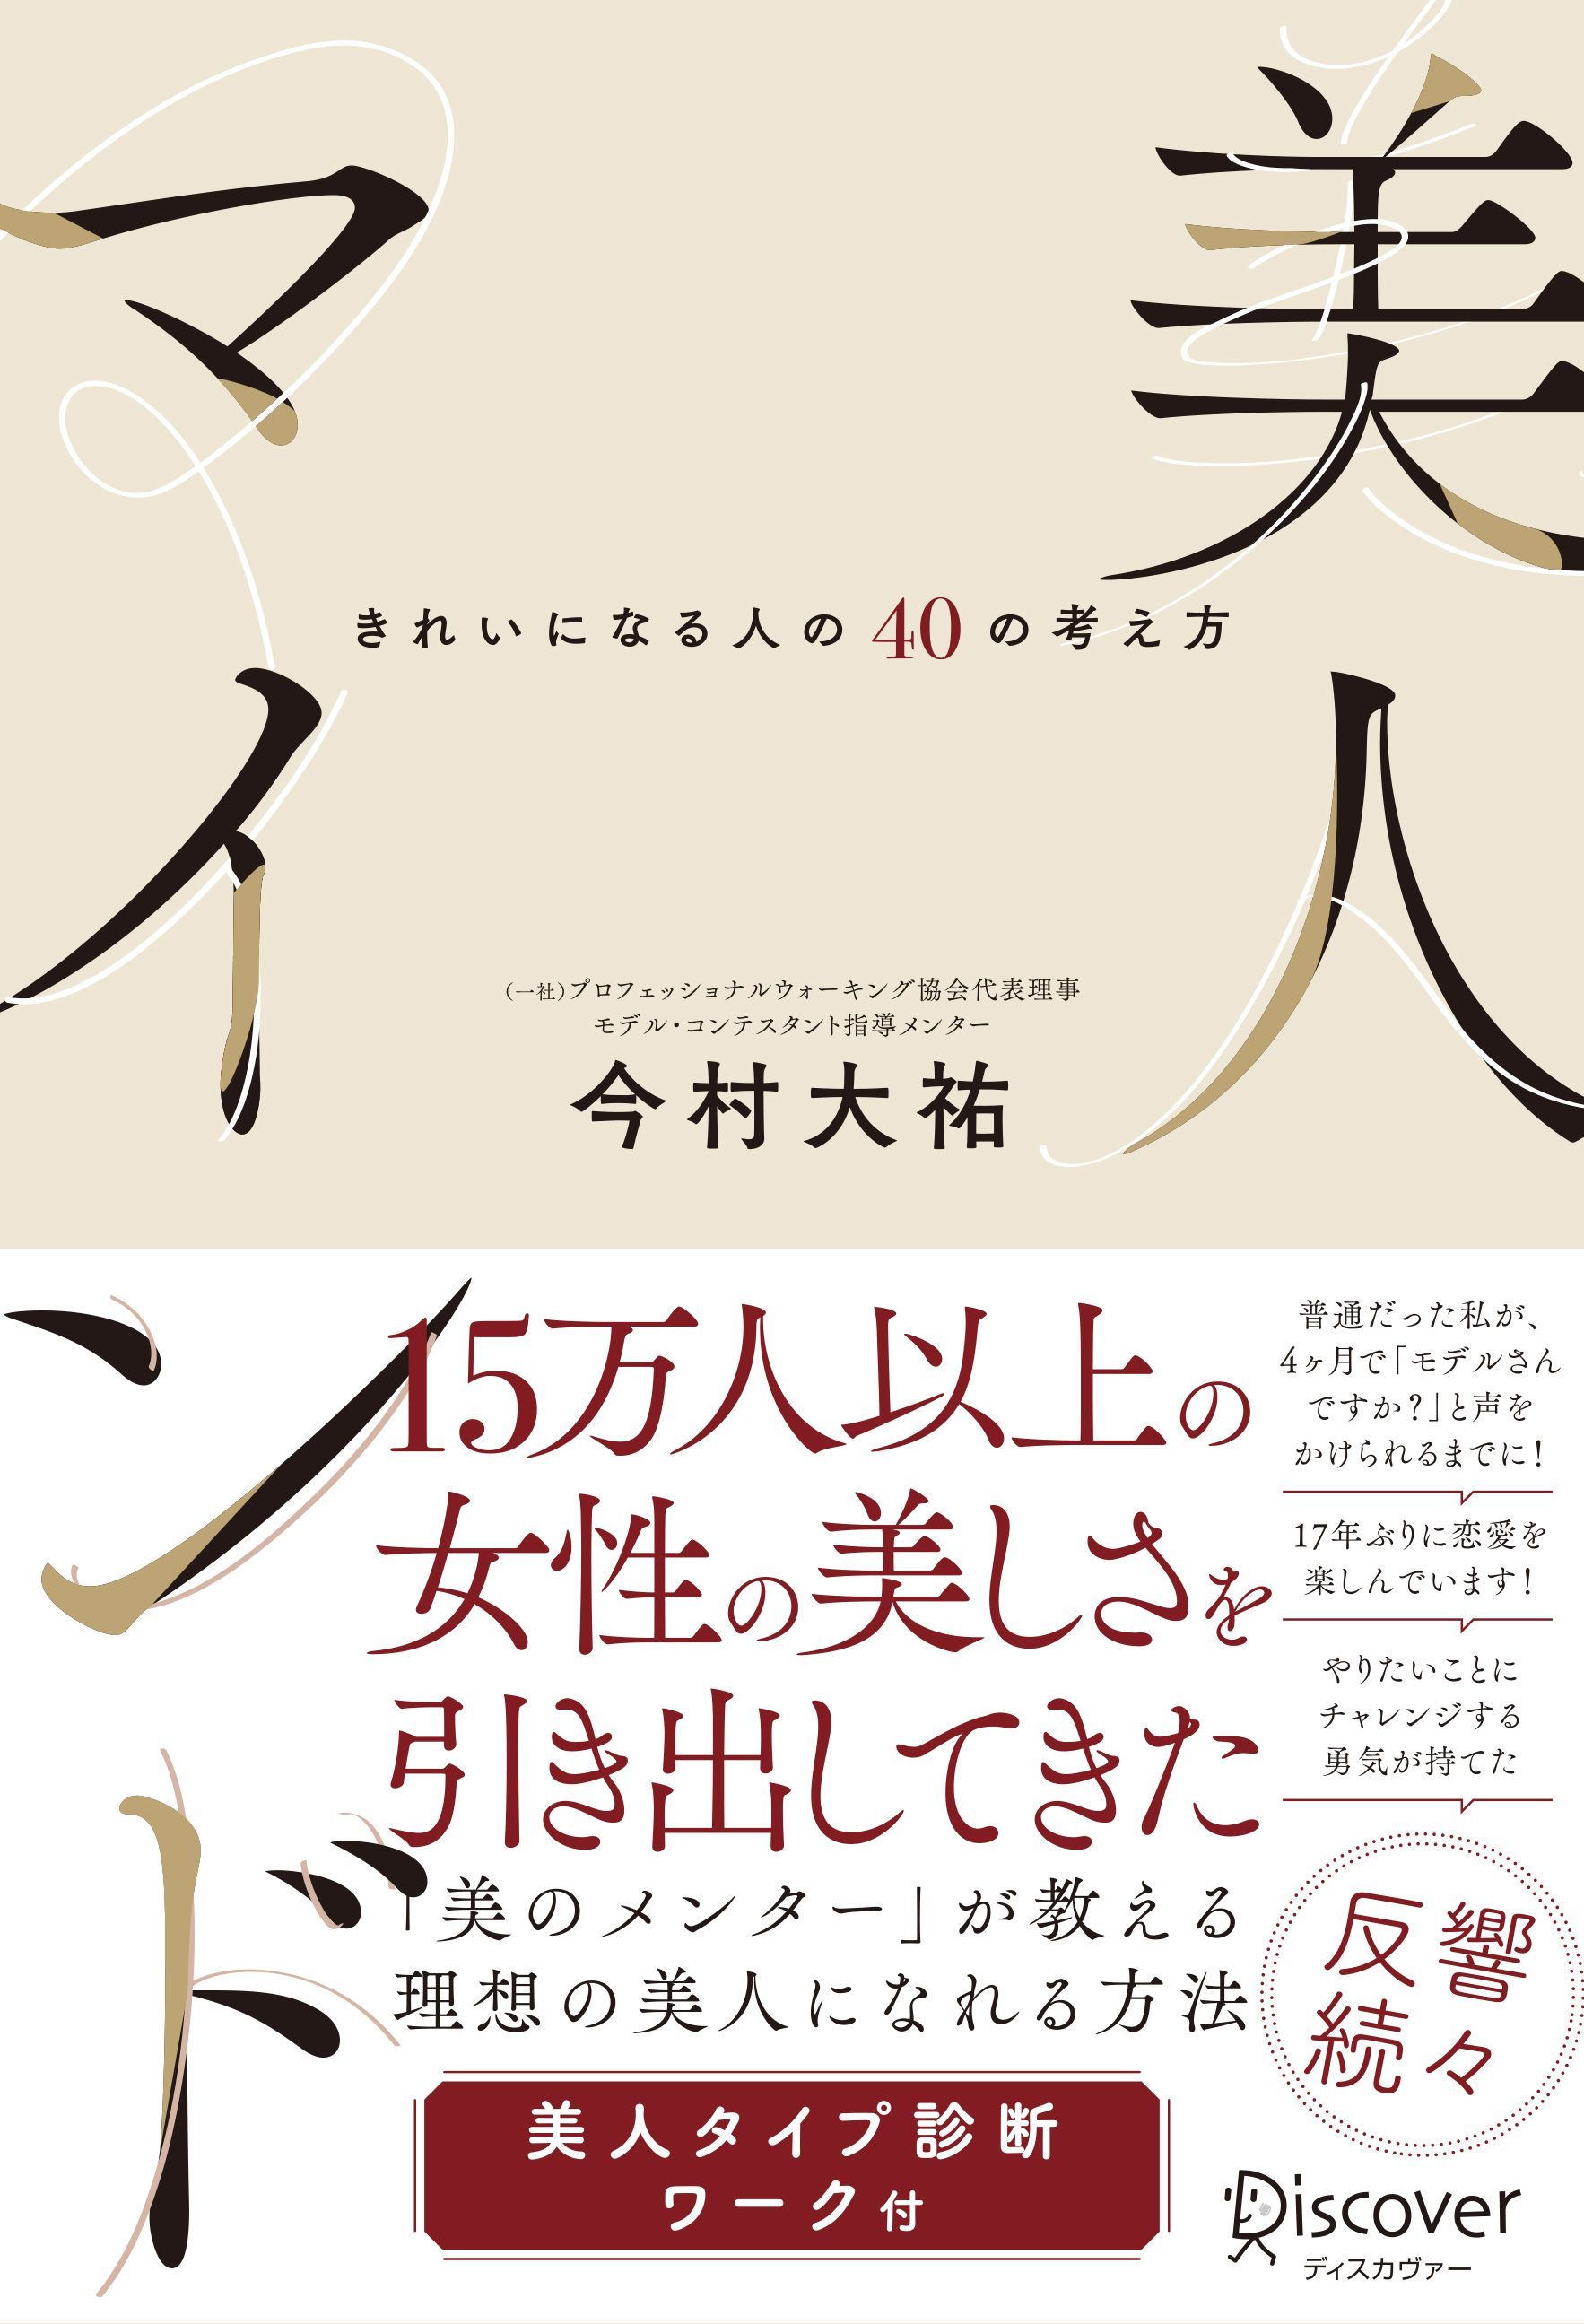 冨永愛 「美をつくる食事」 「美の法則」 2冊セット - 女性情報誌